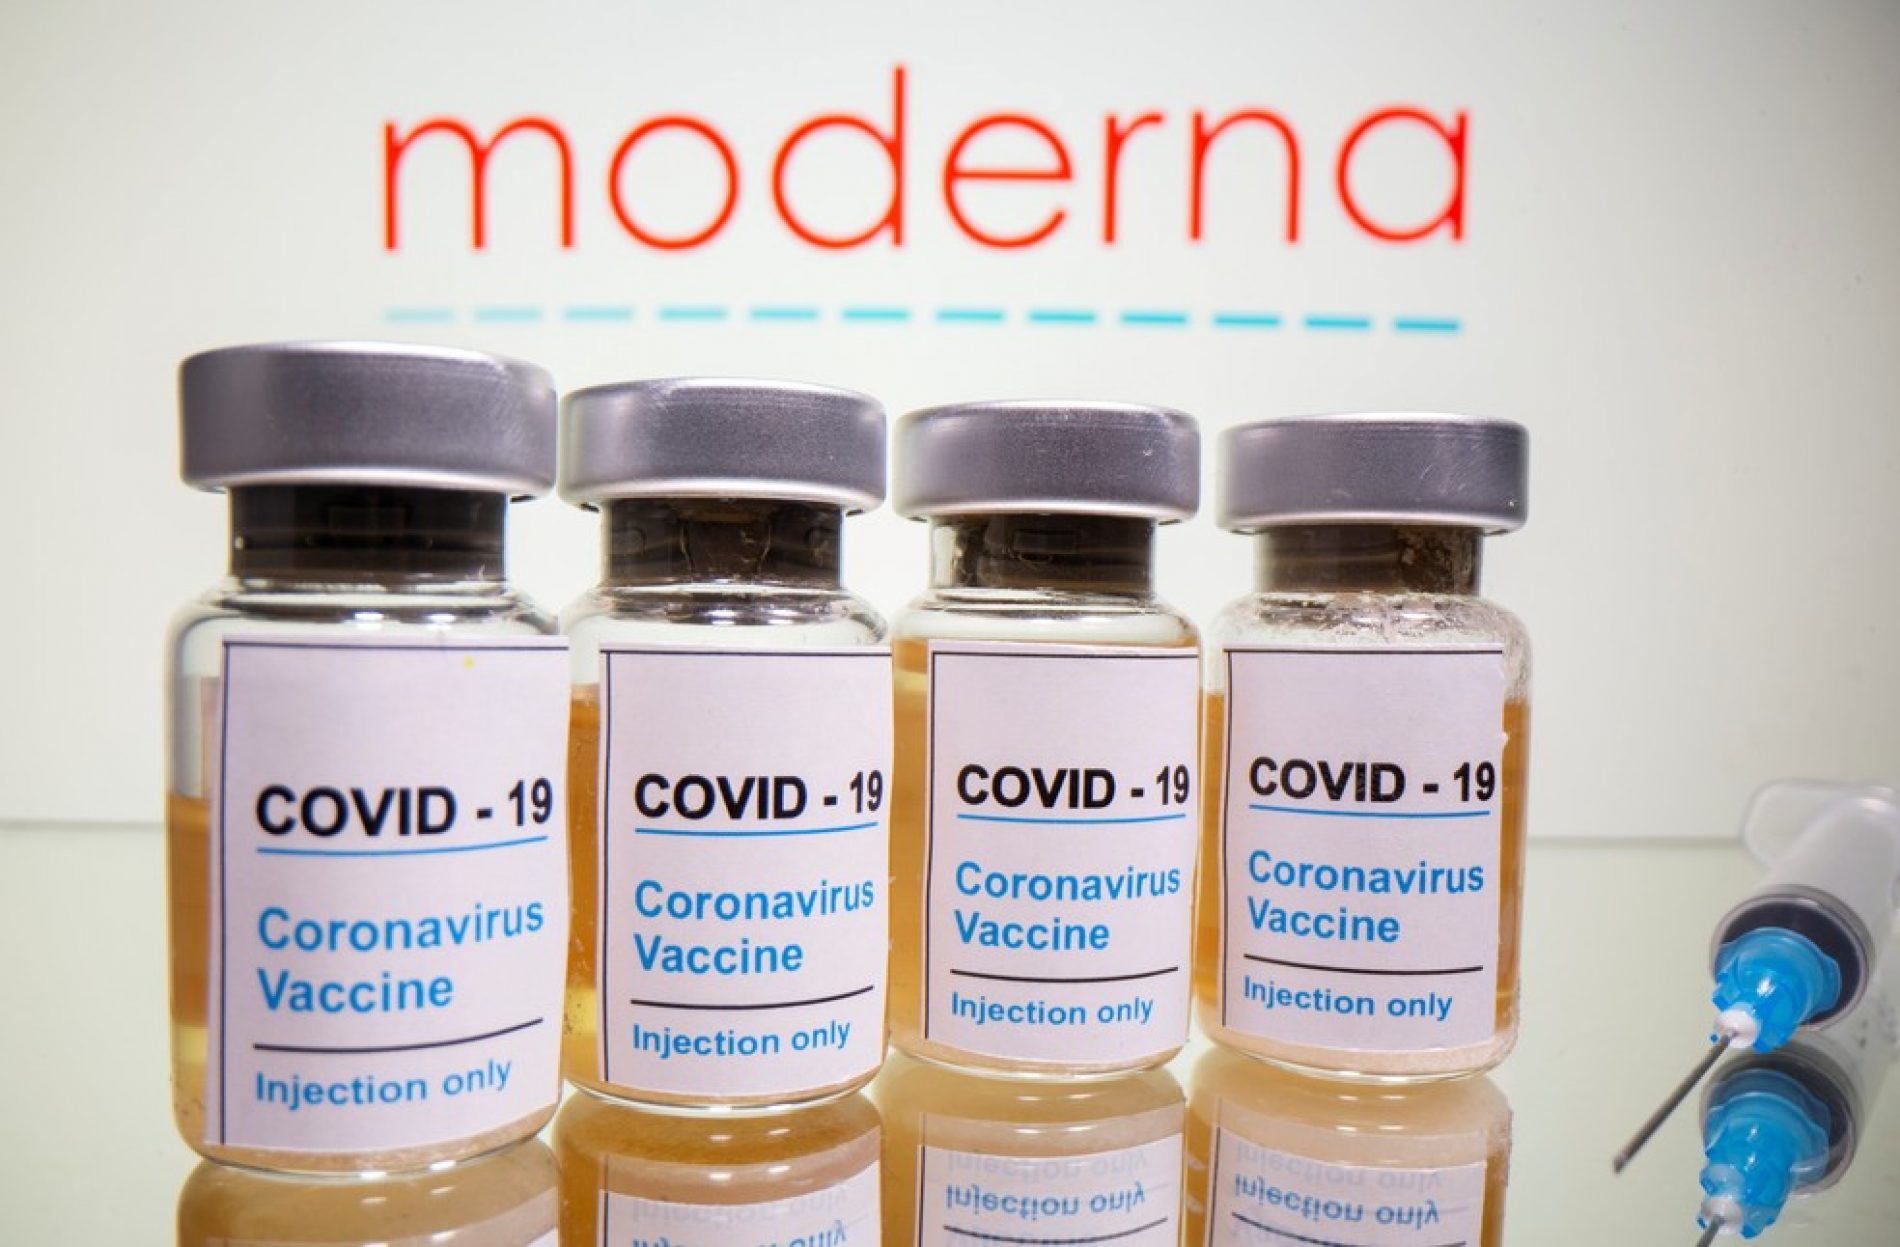 Moderna afirma que sua vacina é 94,5% eficaz, segundo análise preliminar da fase 3